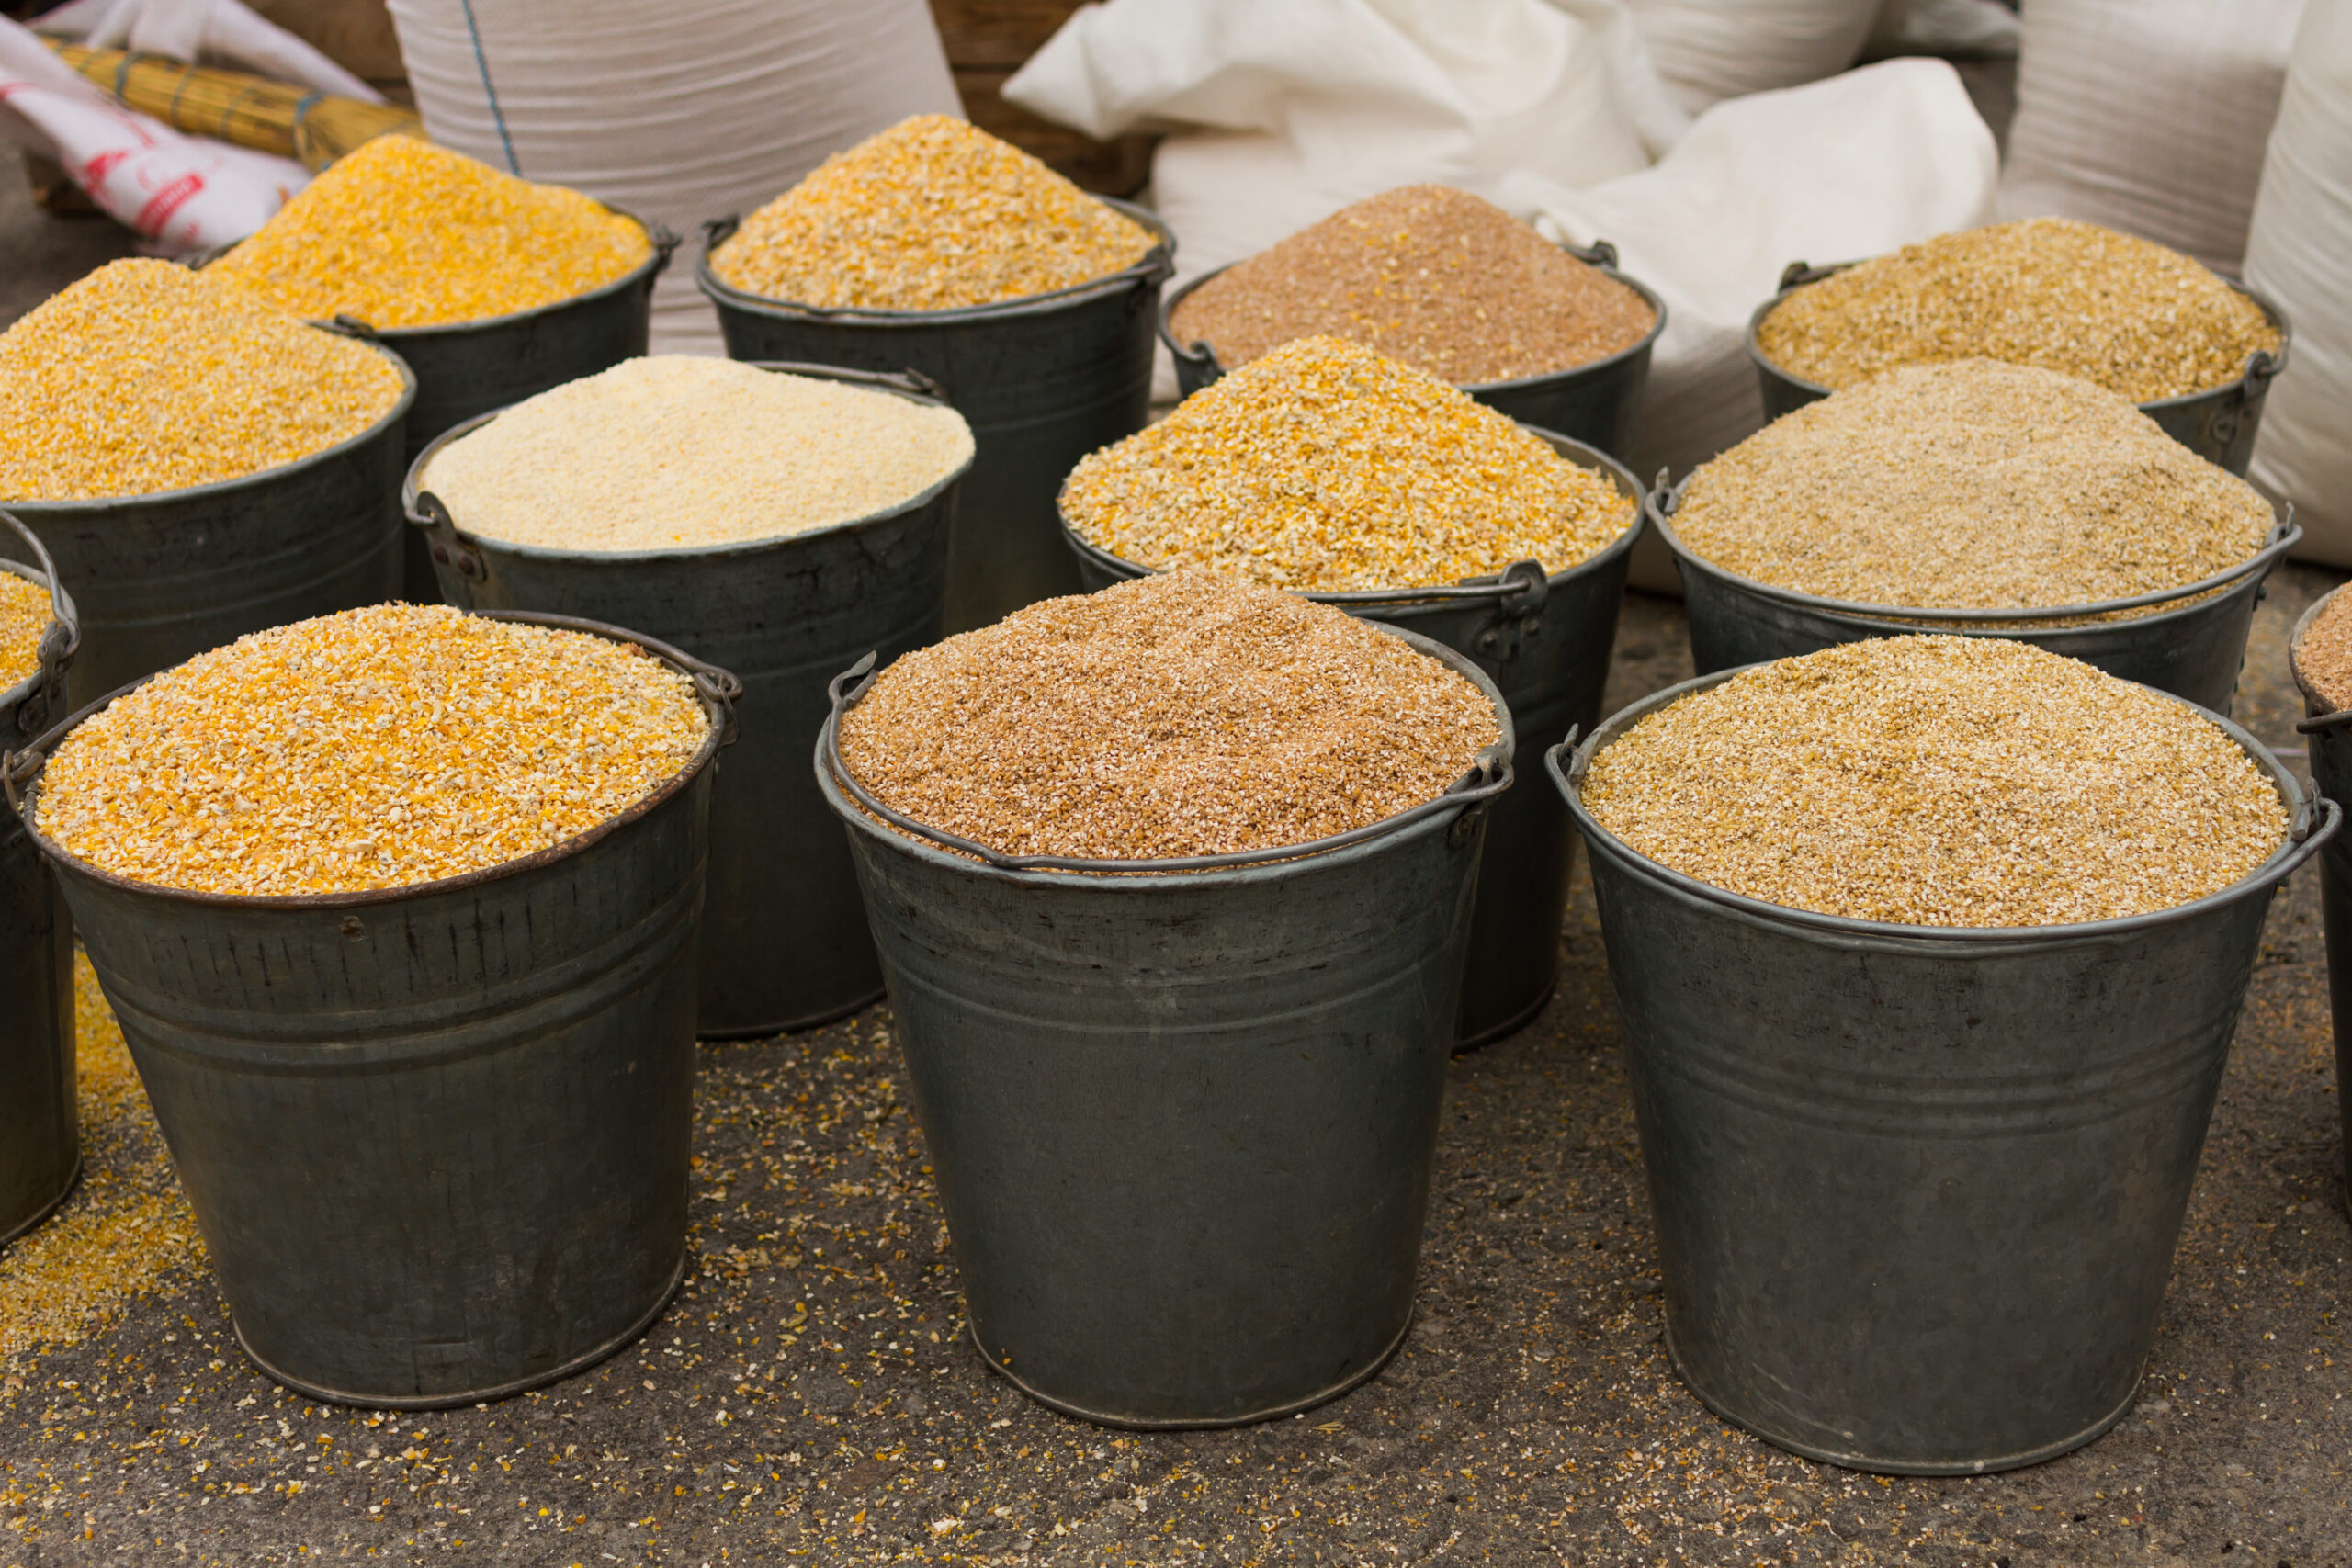 Buckets of corn animal feed